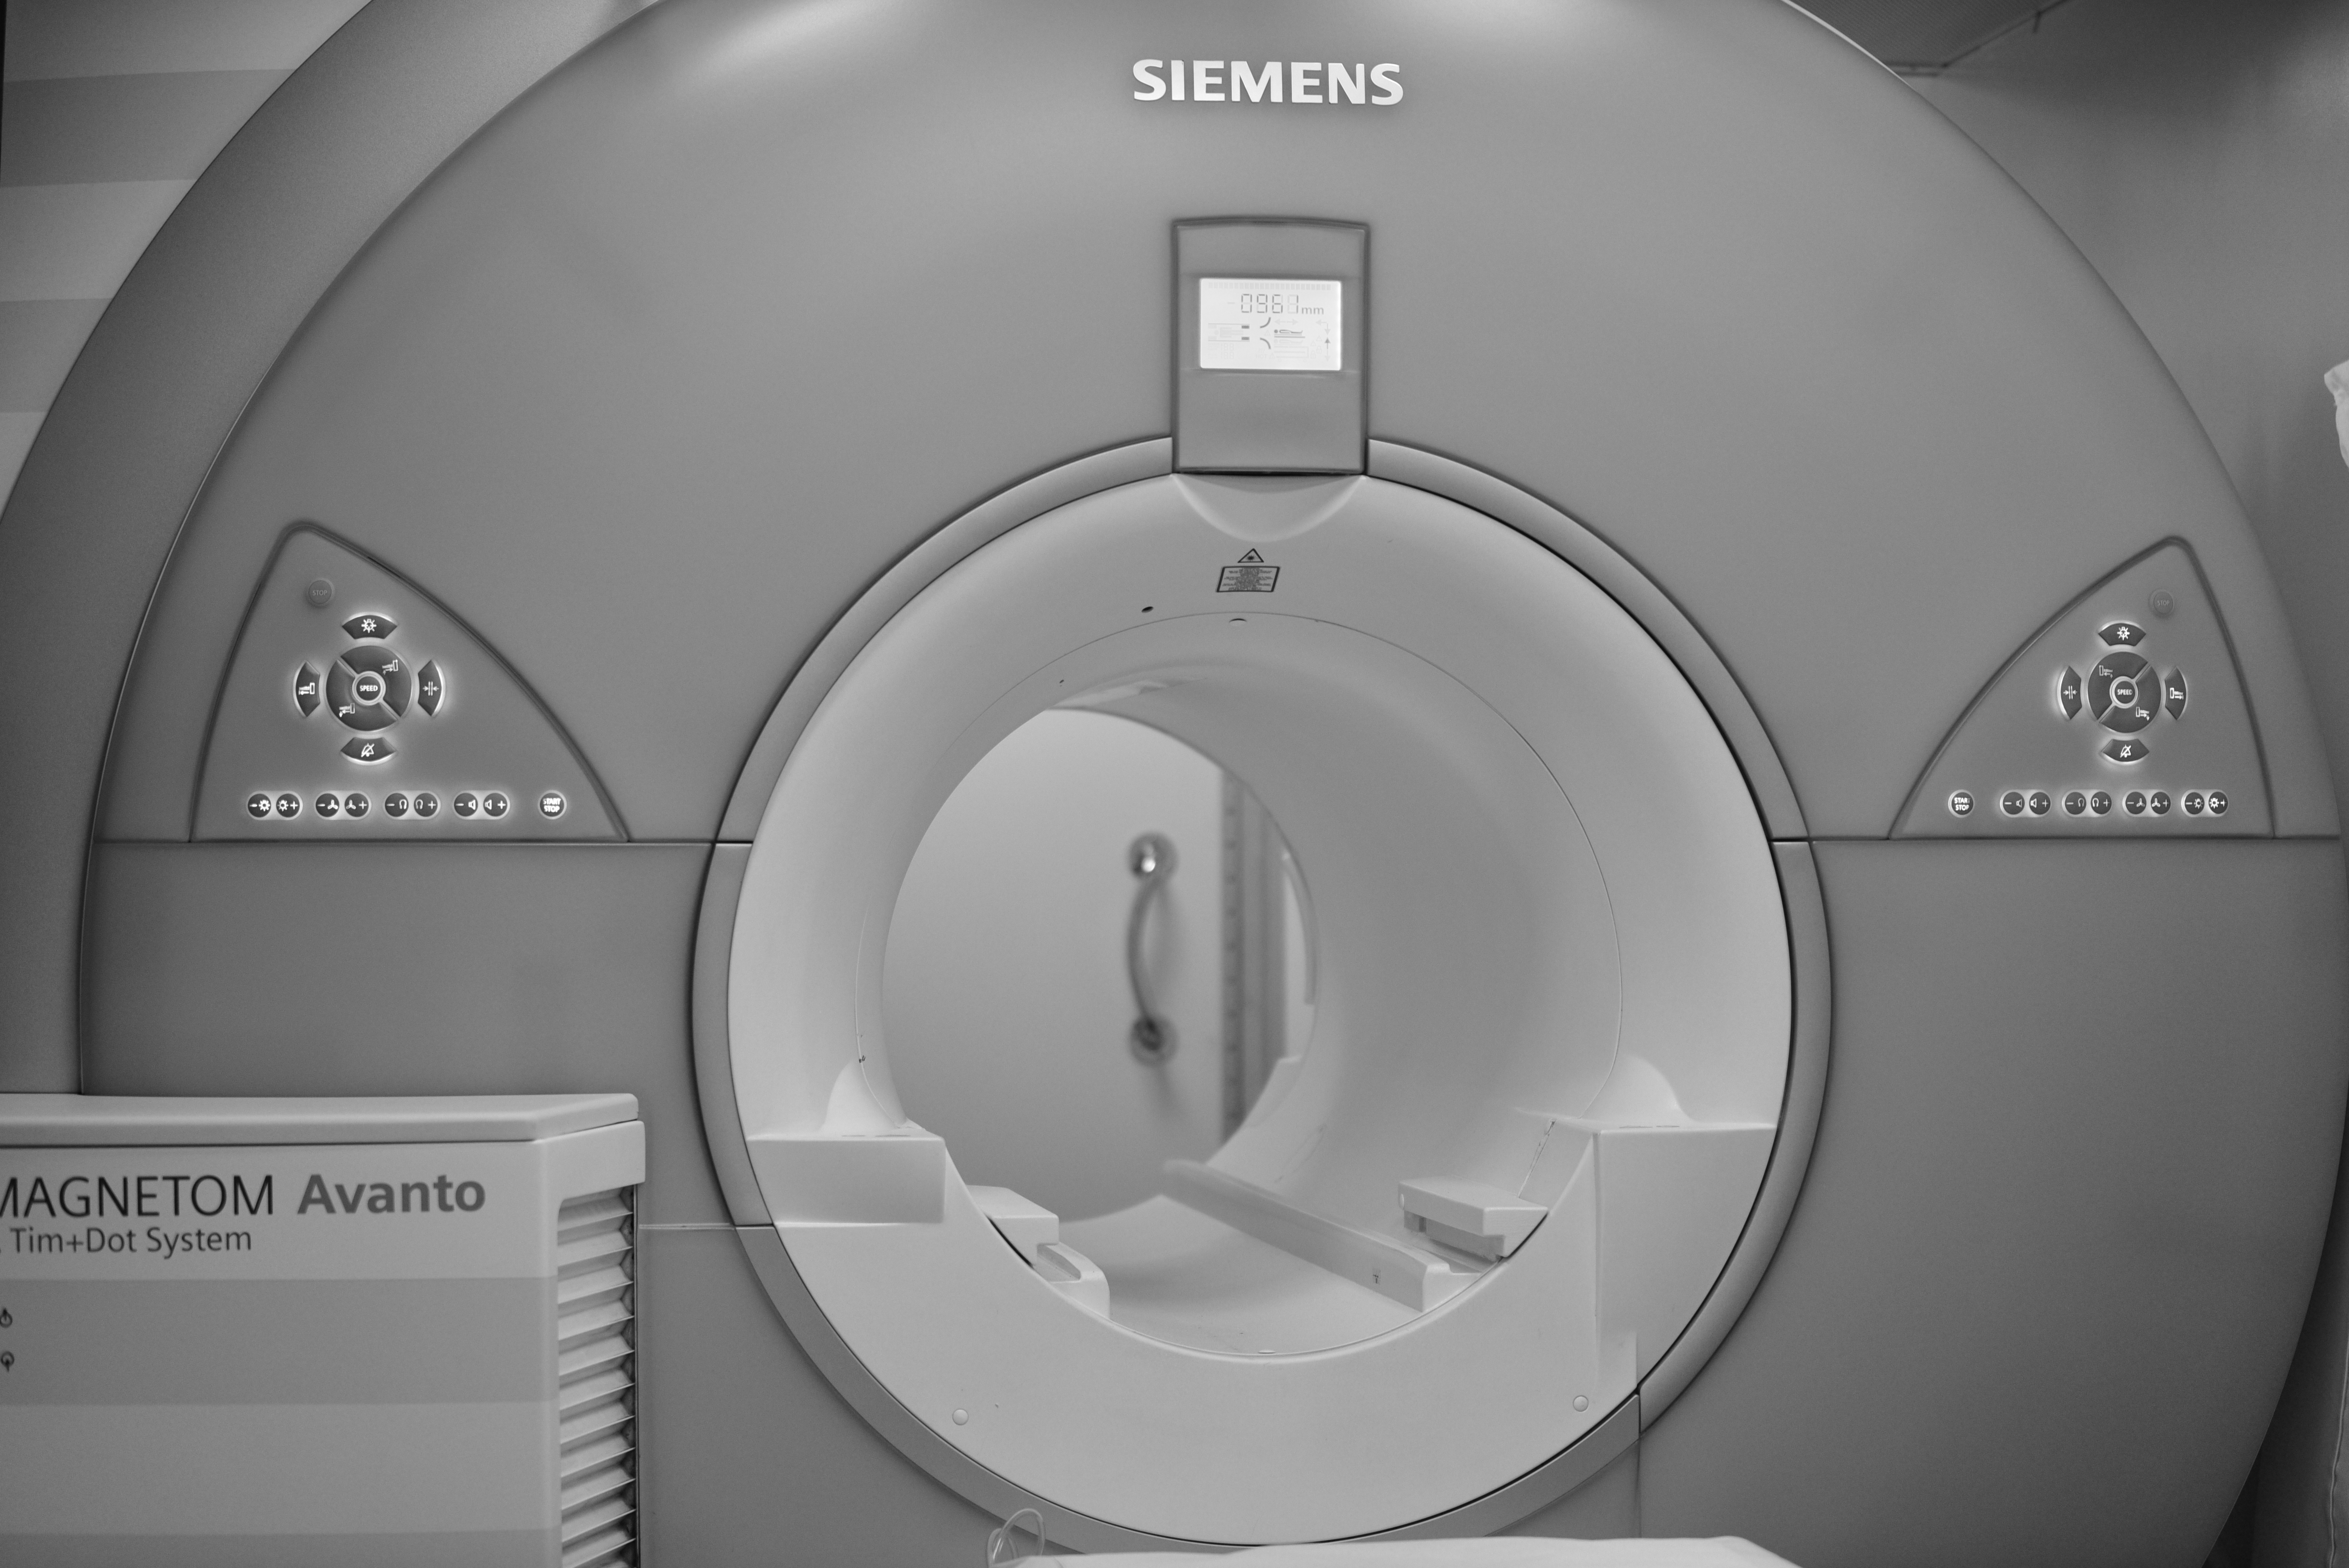 Private MRI Scan